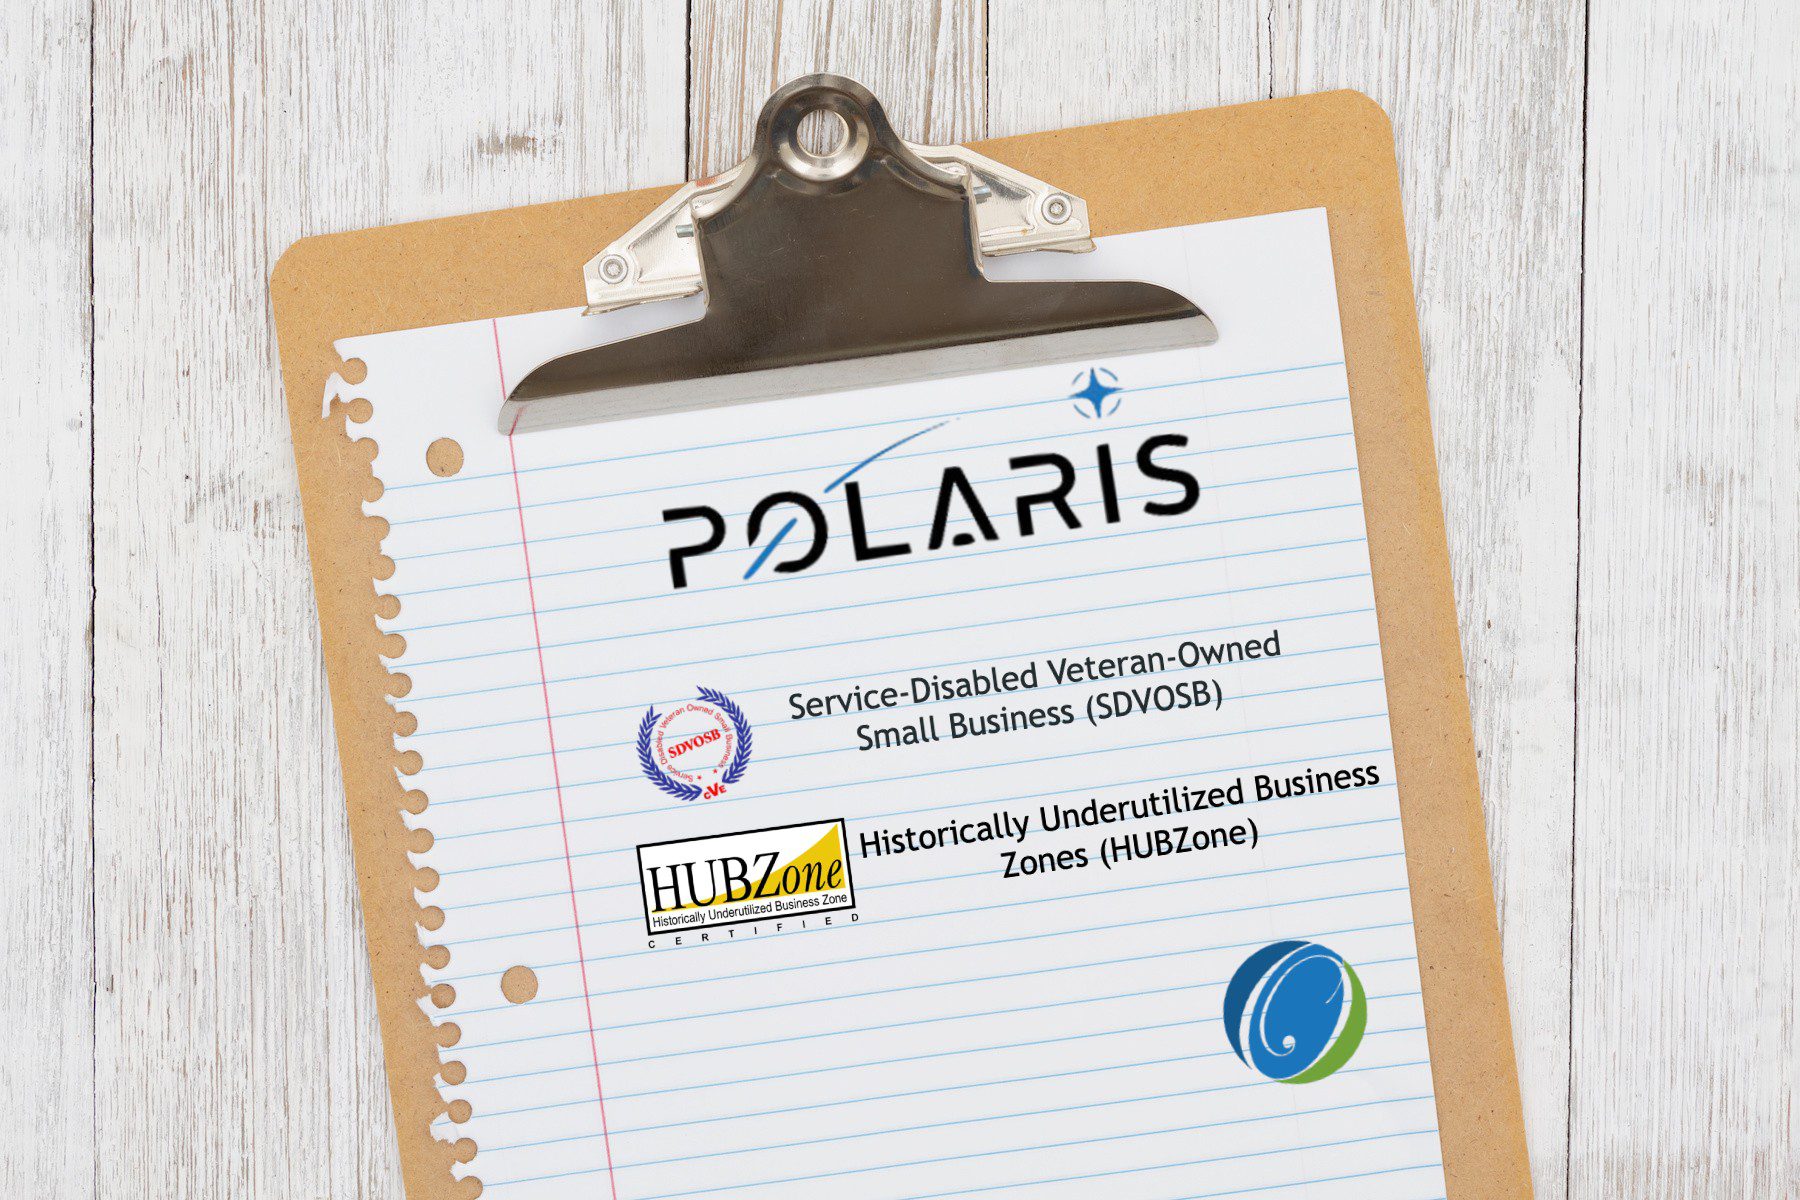 Polaris-Update-Image